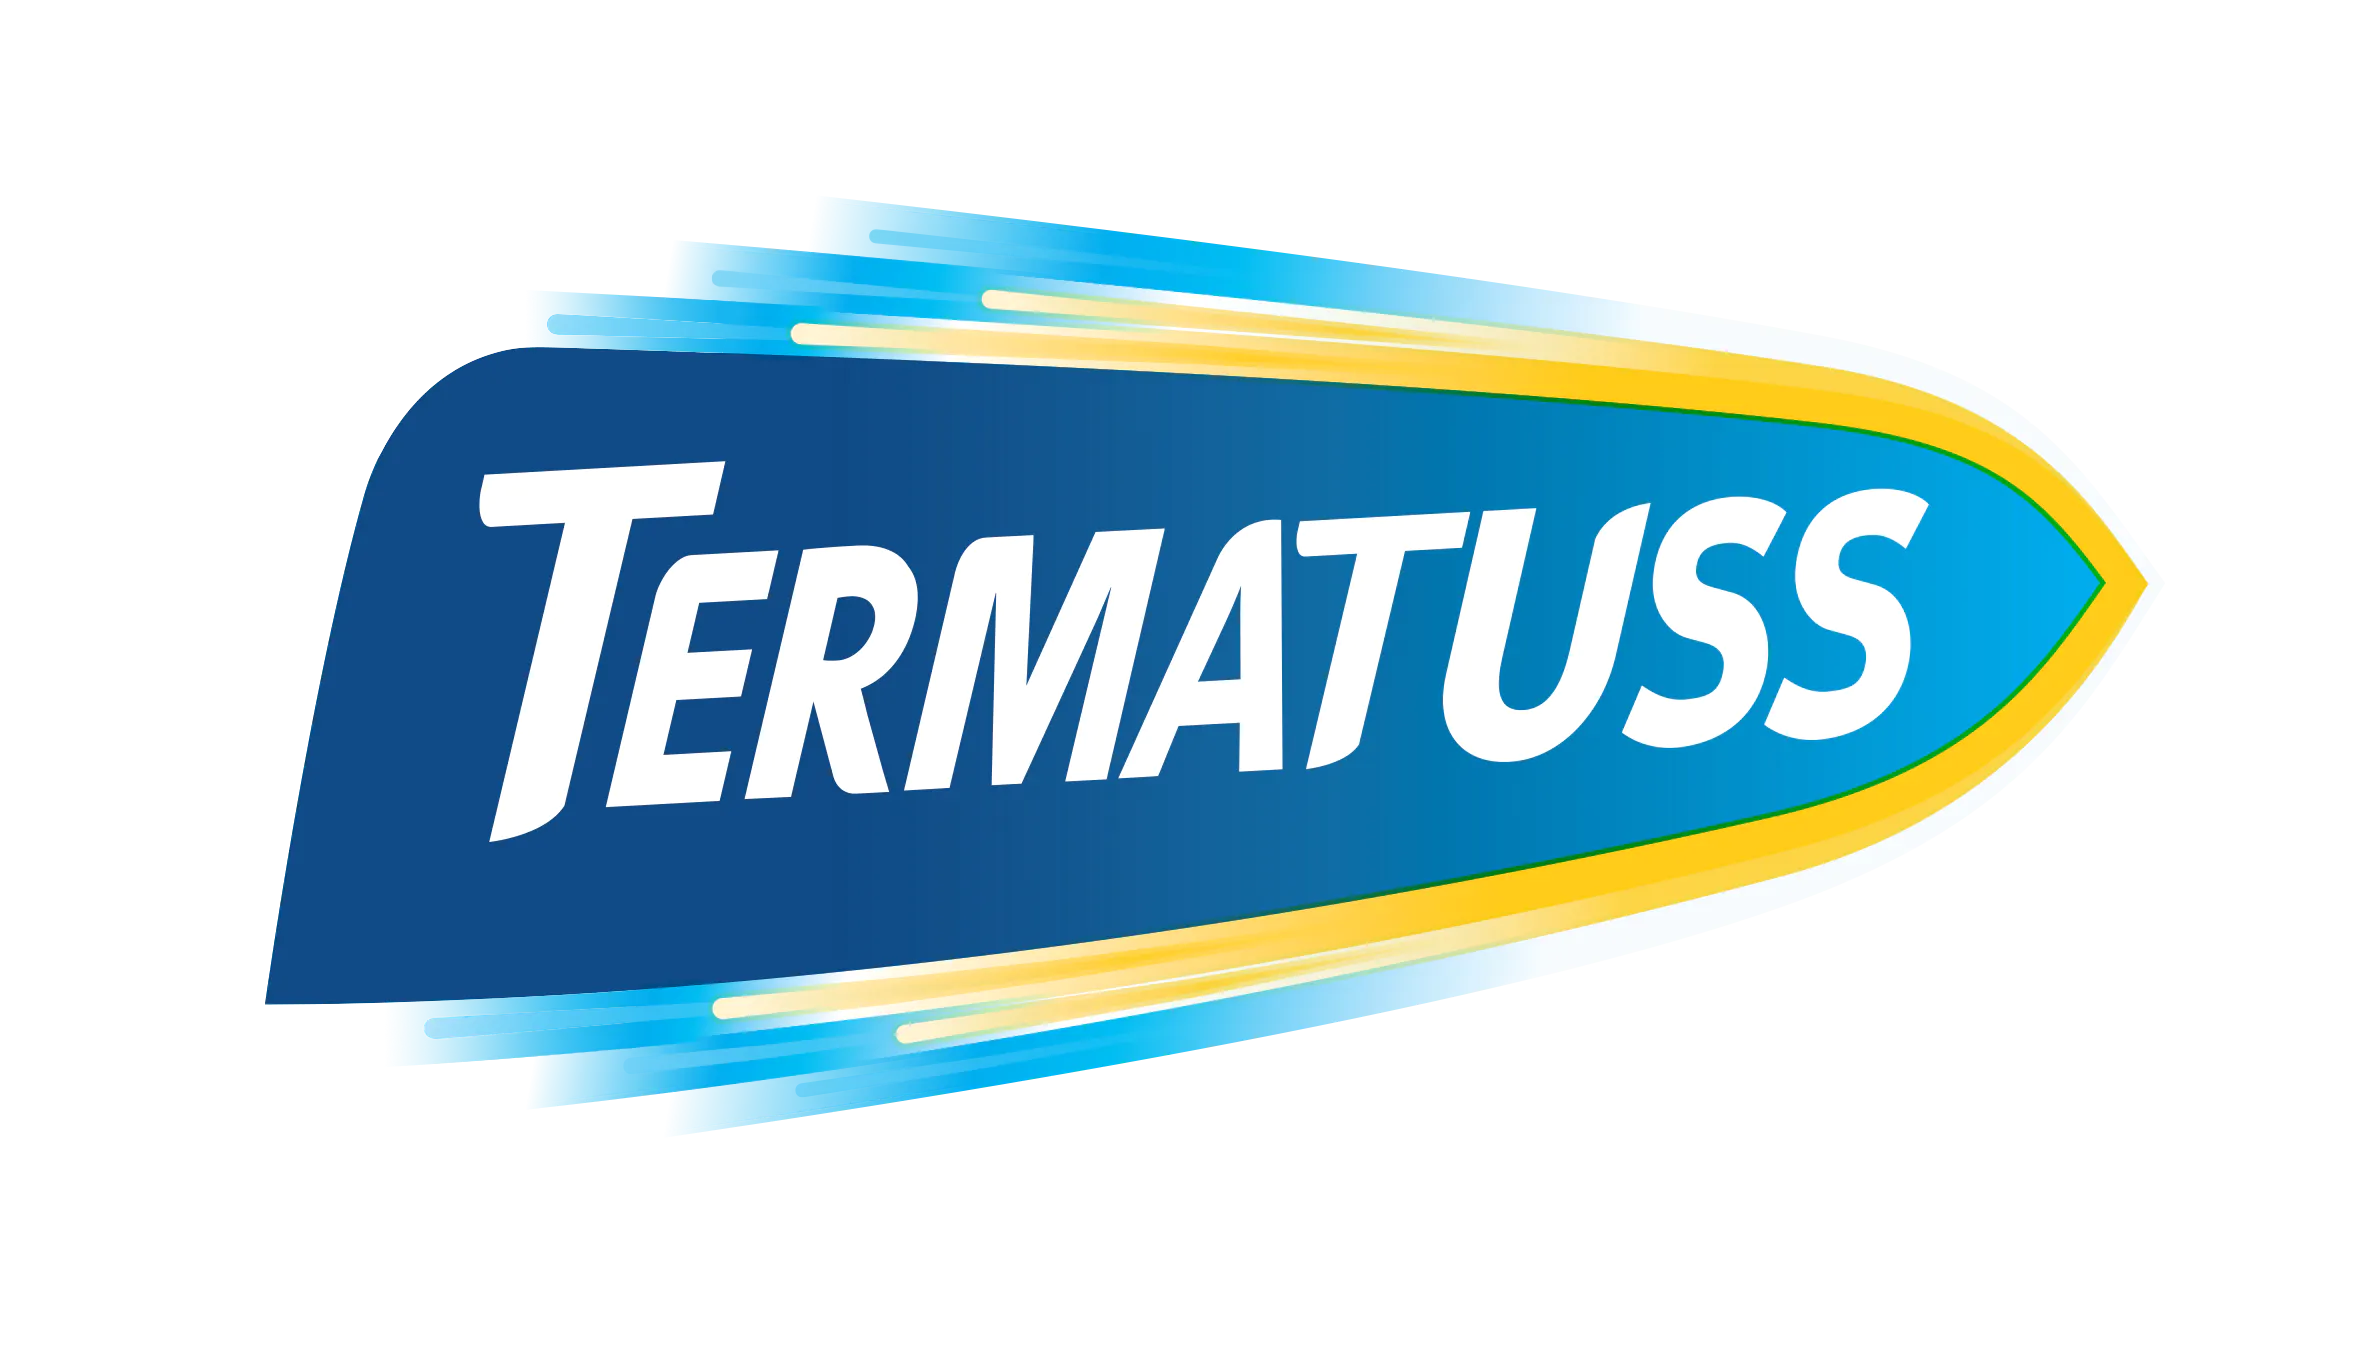 Productos de la marca TERMATUSS